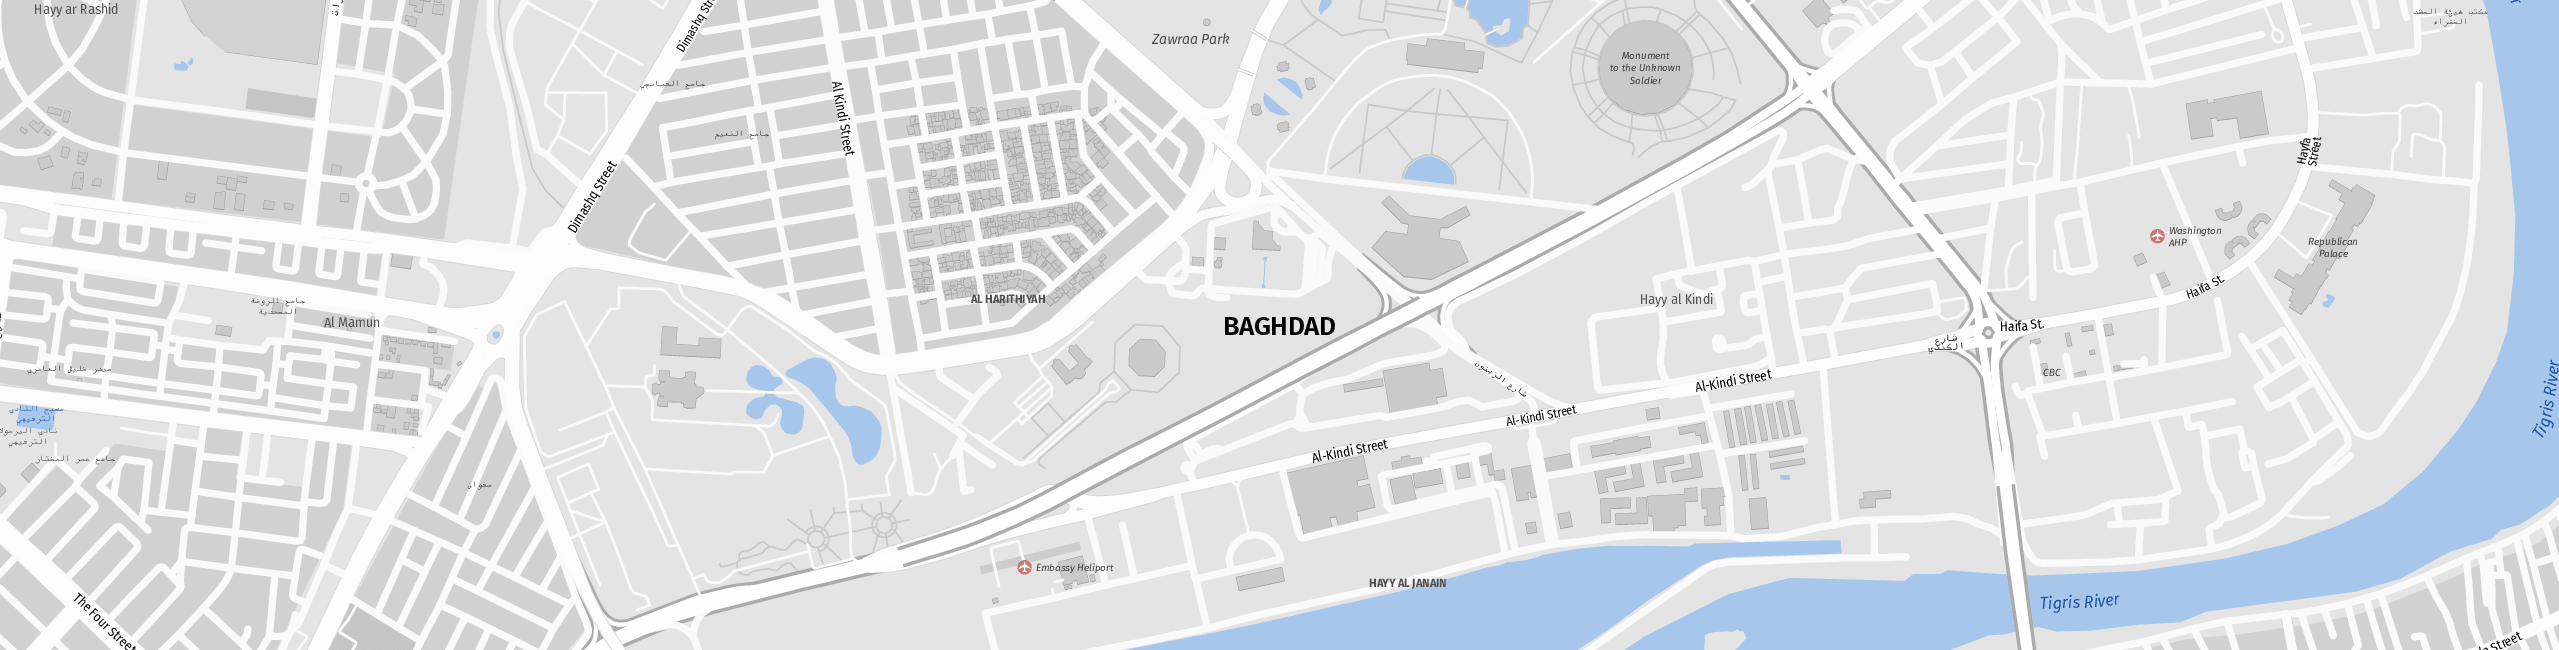 Stadtplan Baghdad zum Downloaden.